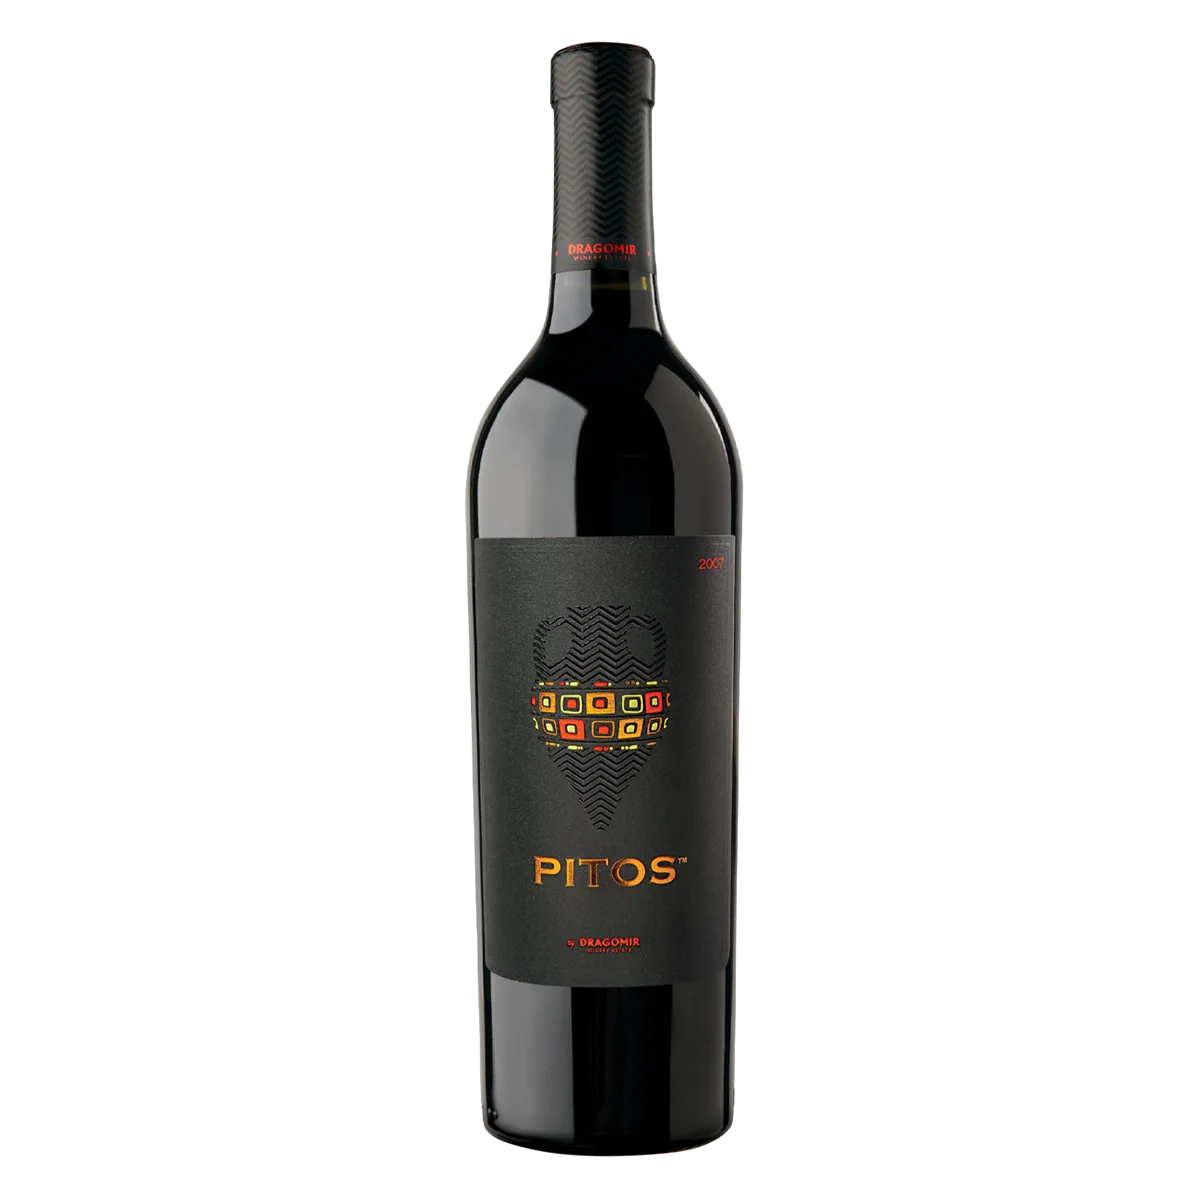 Pitos 2013 - Rotwein trocken aus Bulgarien - Dragomir